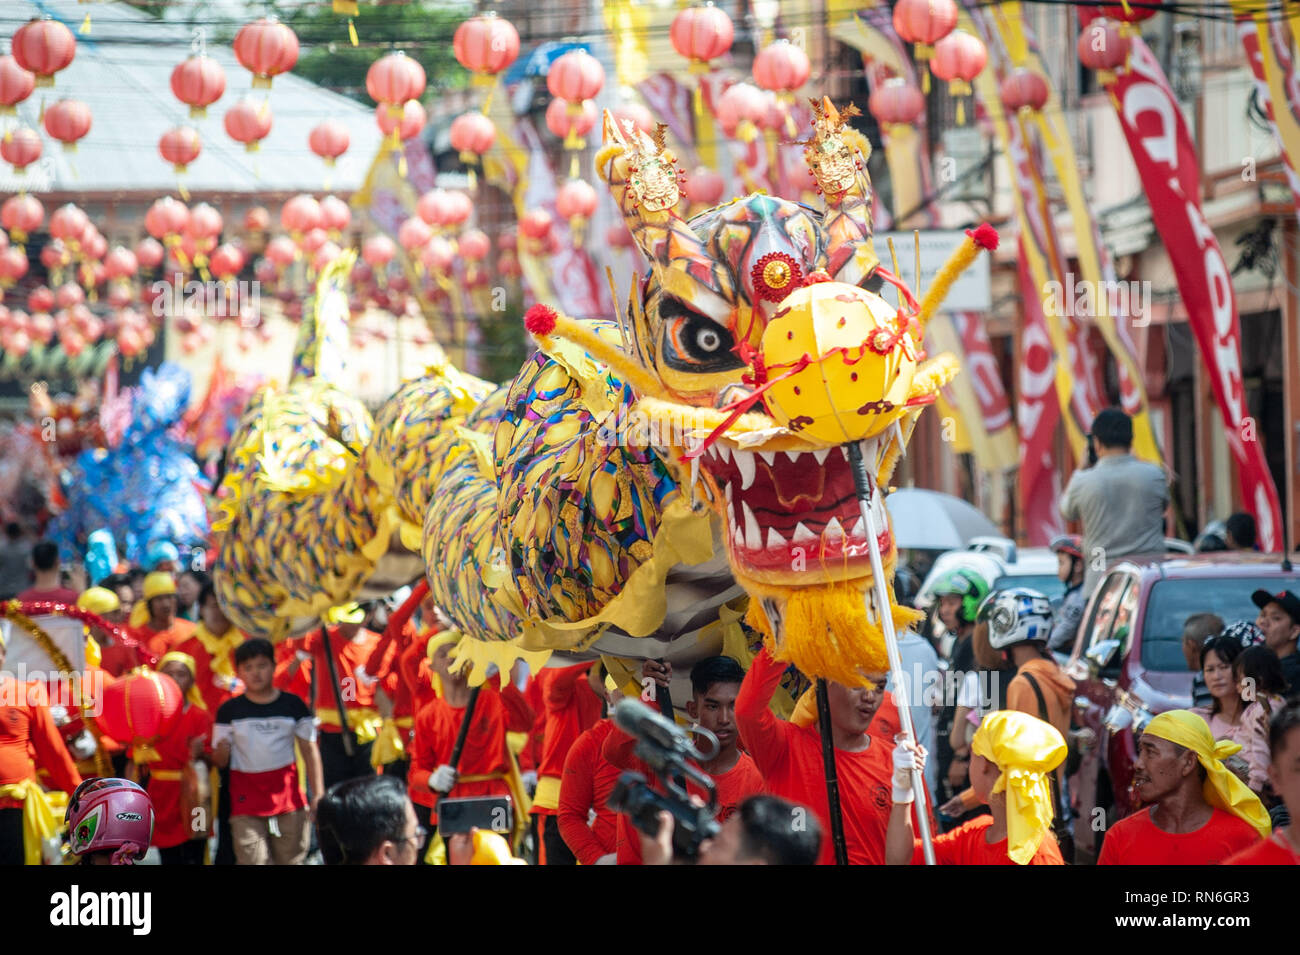 Teilnehmer, die mit einer Replik ein Drache während des Festivals. Cap klicken Sie meh Festival in der Innenstadt von Singkawang, handelt es sich um Rituale der Eröffnung das Auge des Drachen, die Feiern stammt aus China dann angepasst und mit lokalen Animismus Kultur, Traditionen und Rituale aufgenommen. Stockfoto